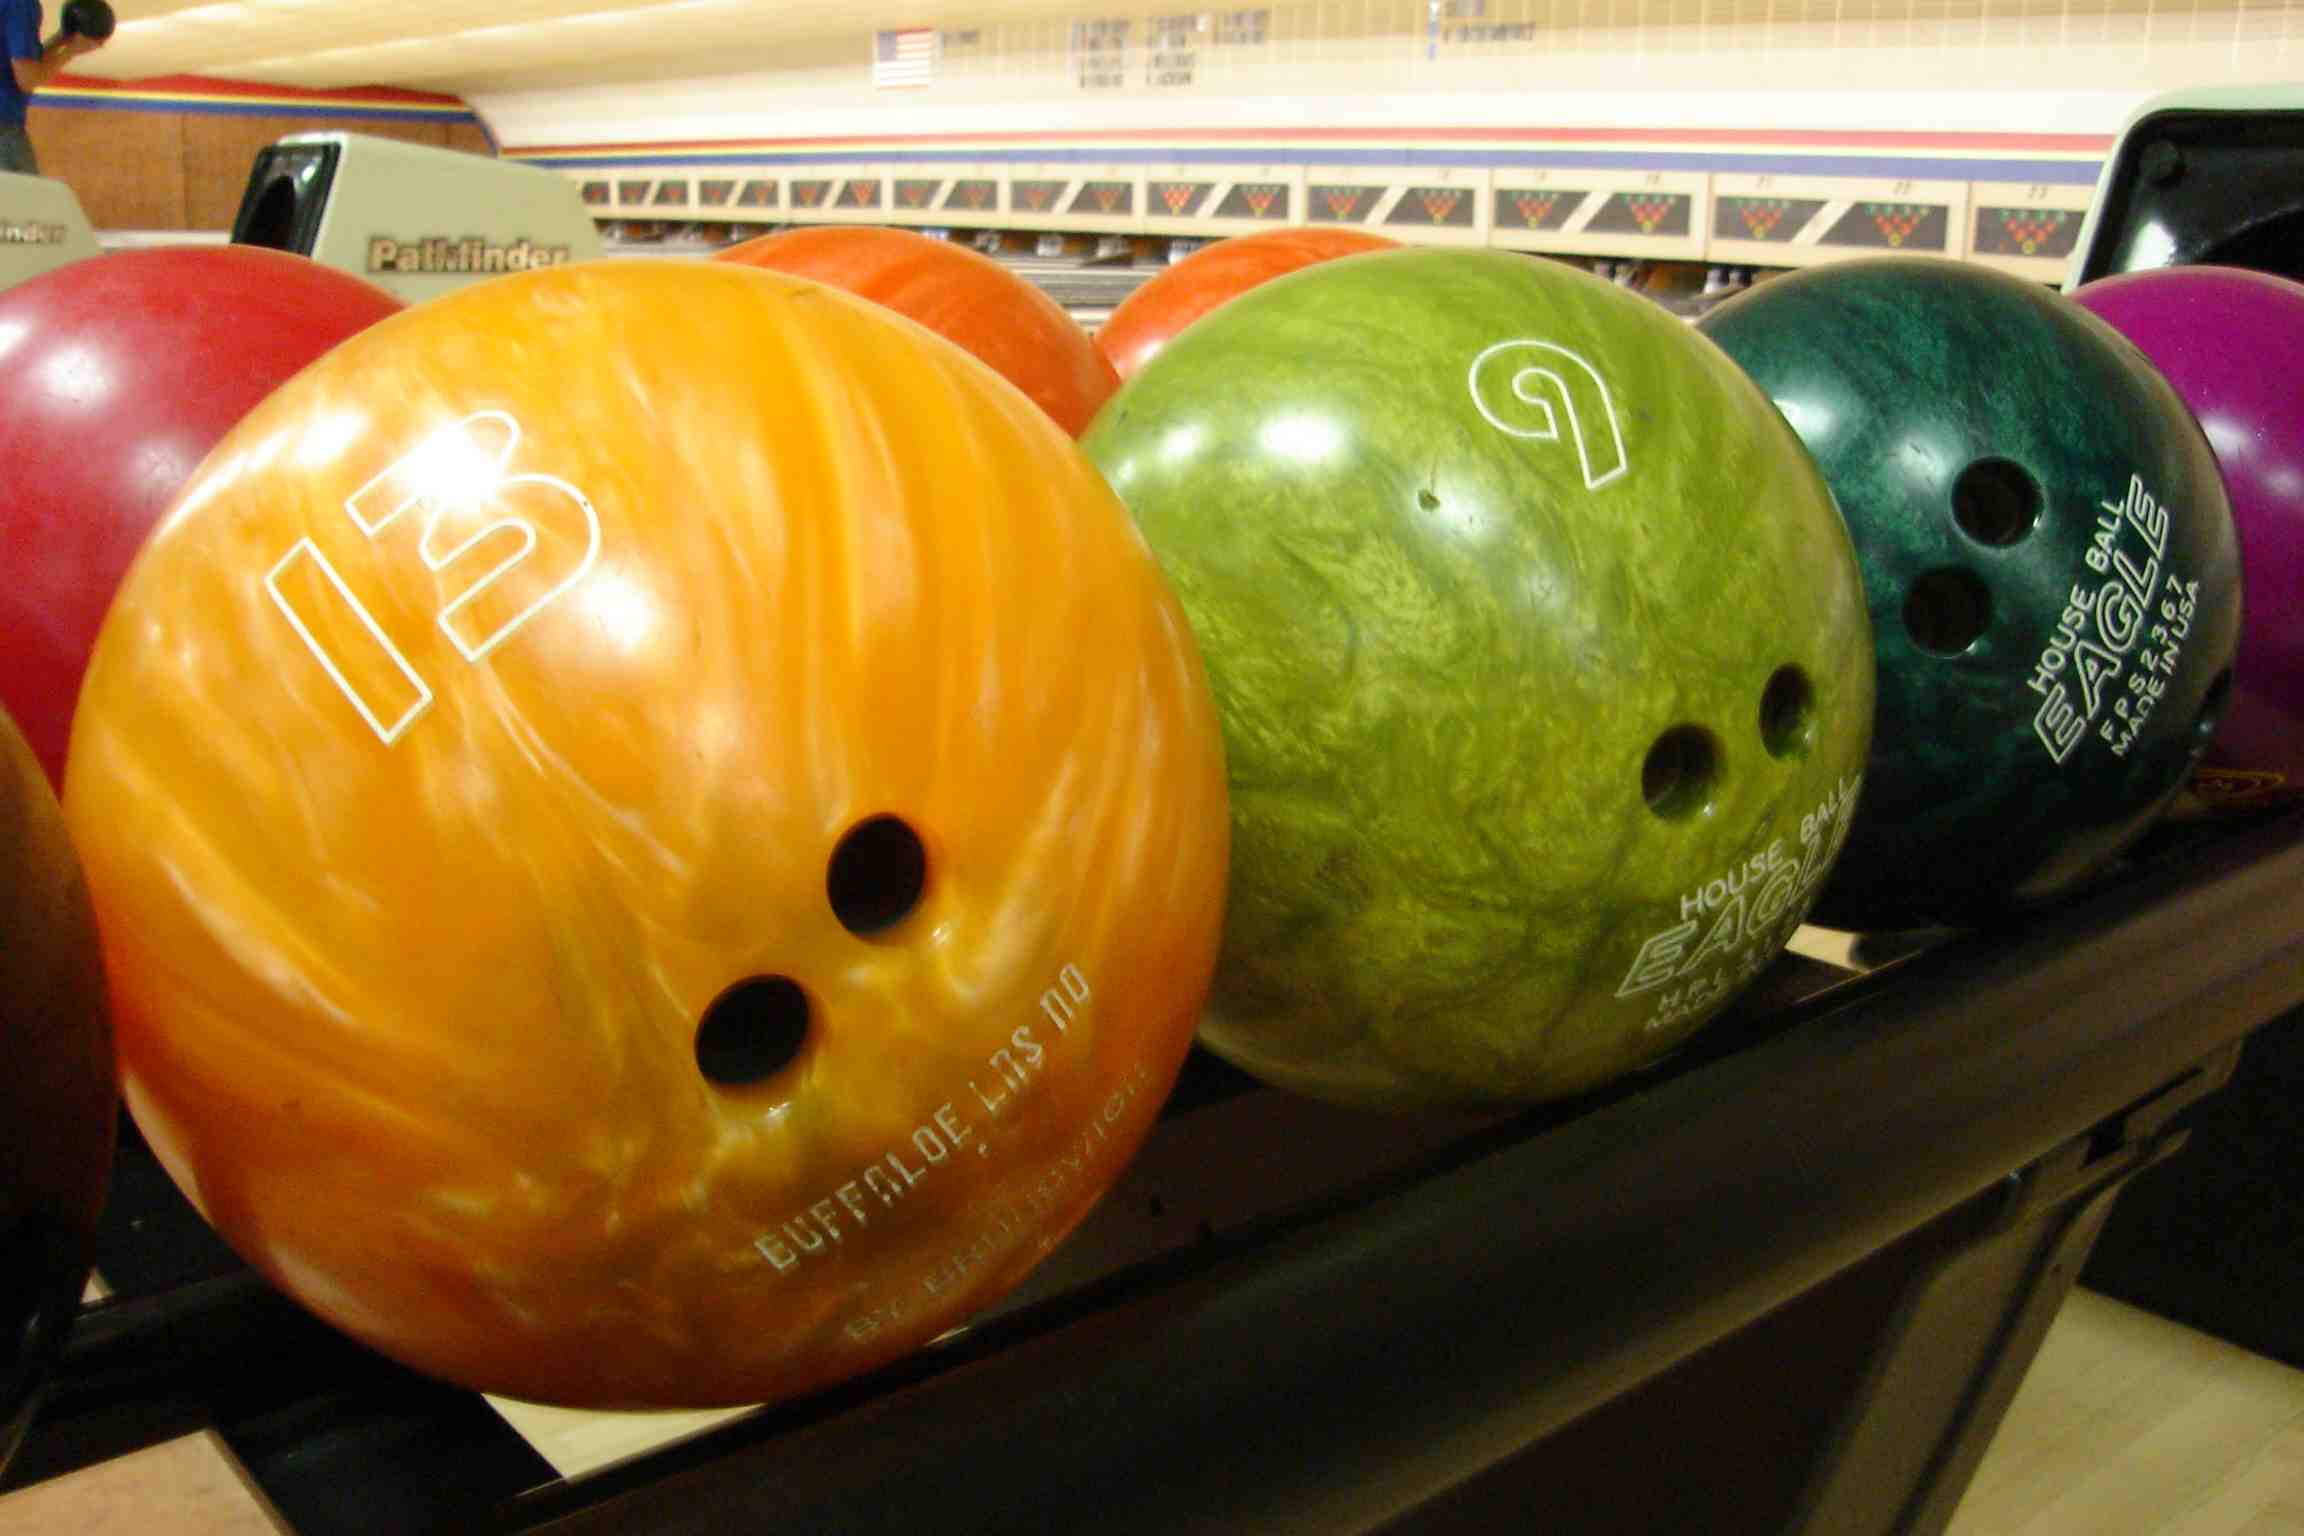 Comment lancer une boule de bowling?